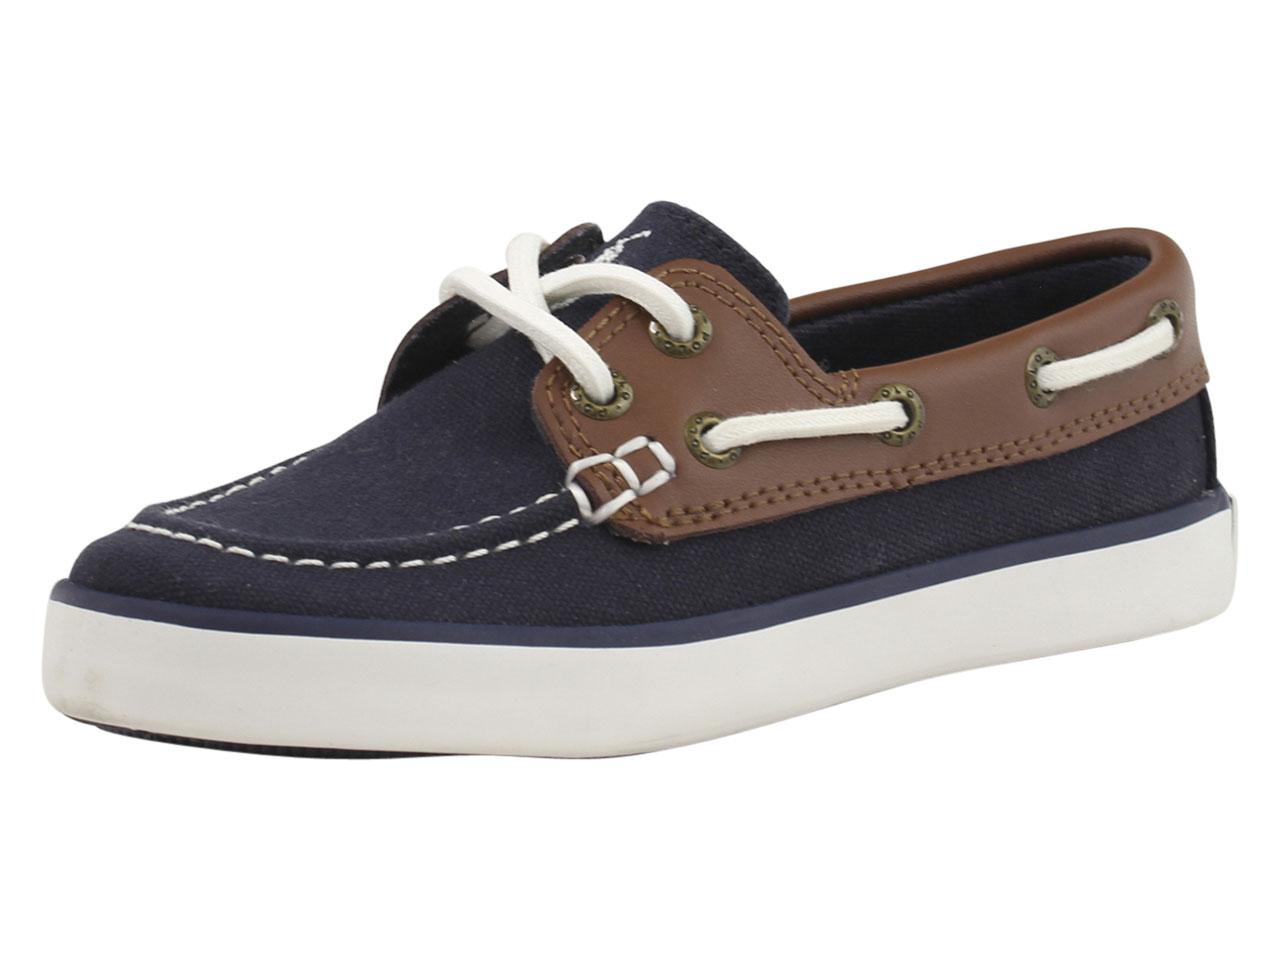 Sander-CL Loafers Boat Shoes